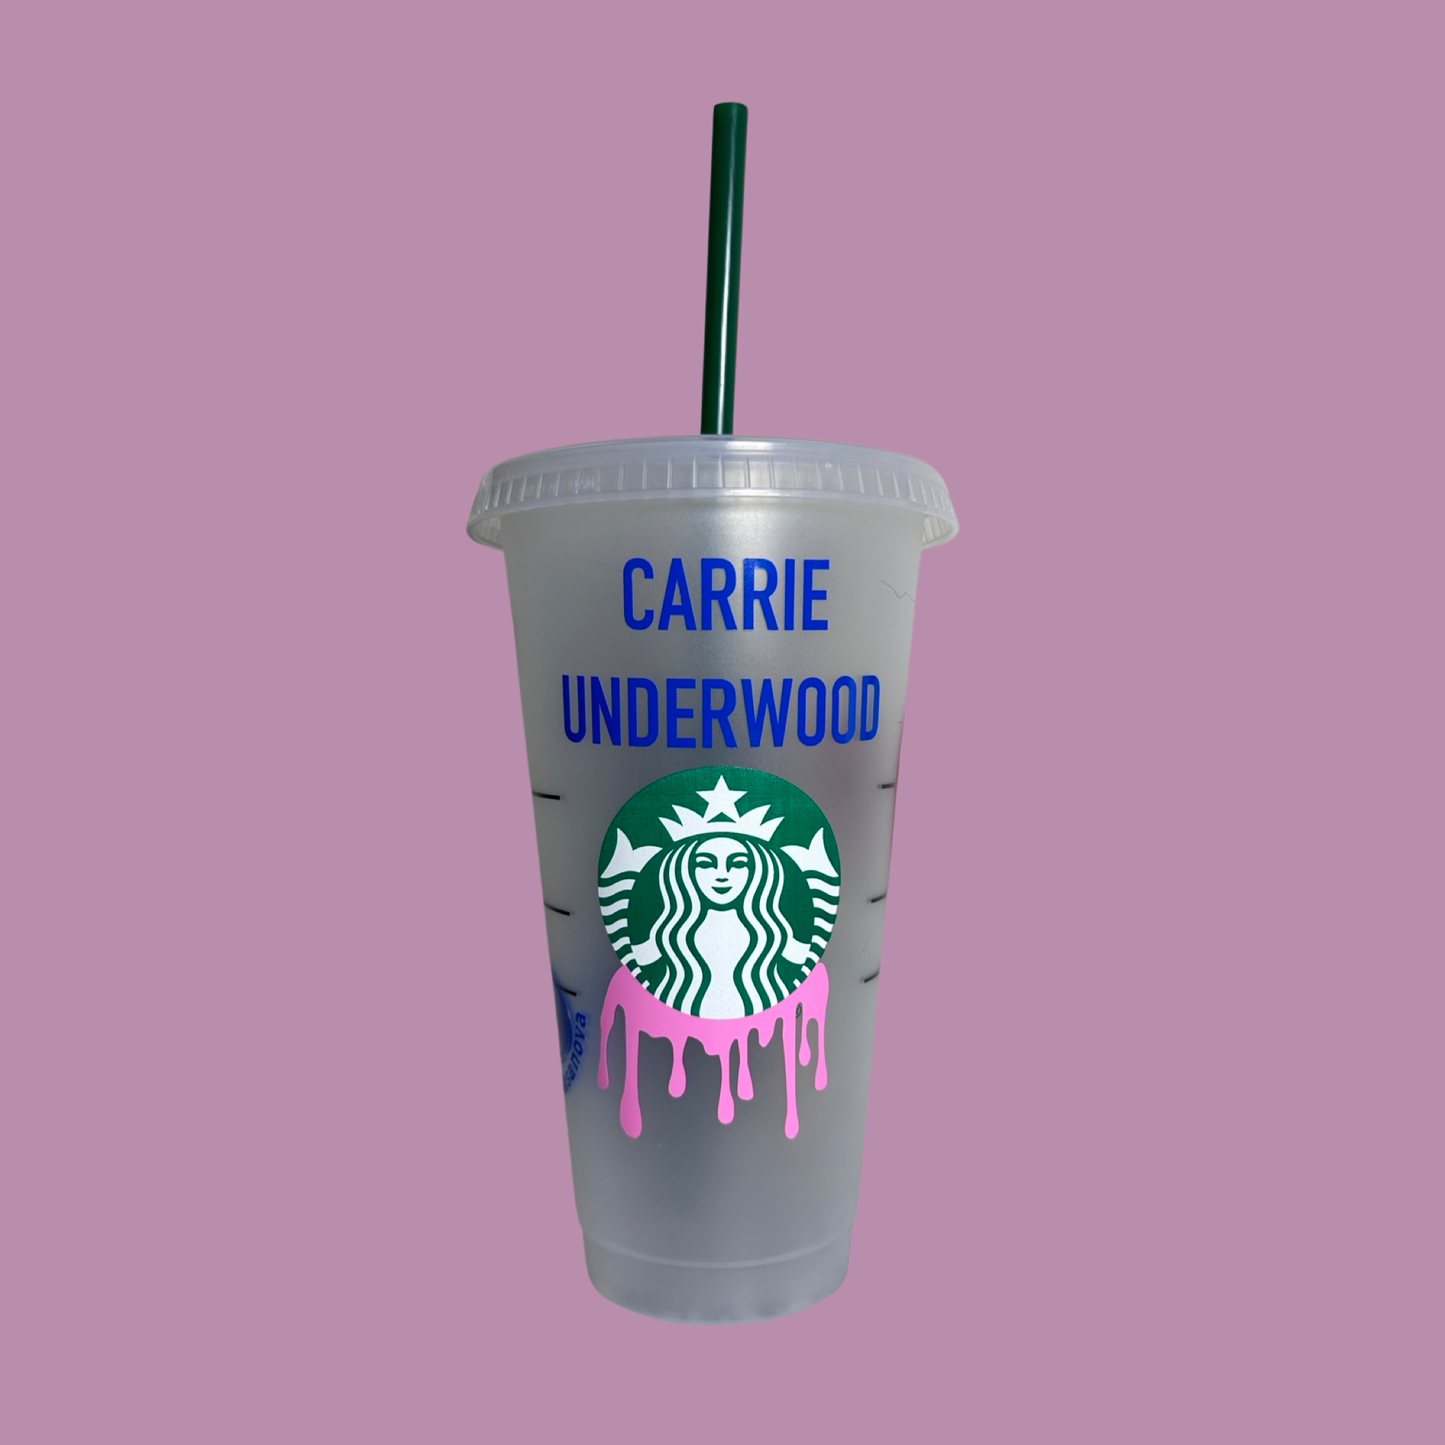 Underwood cup